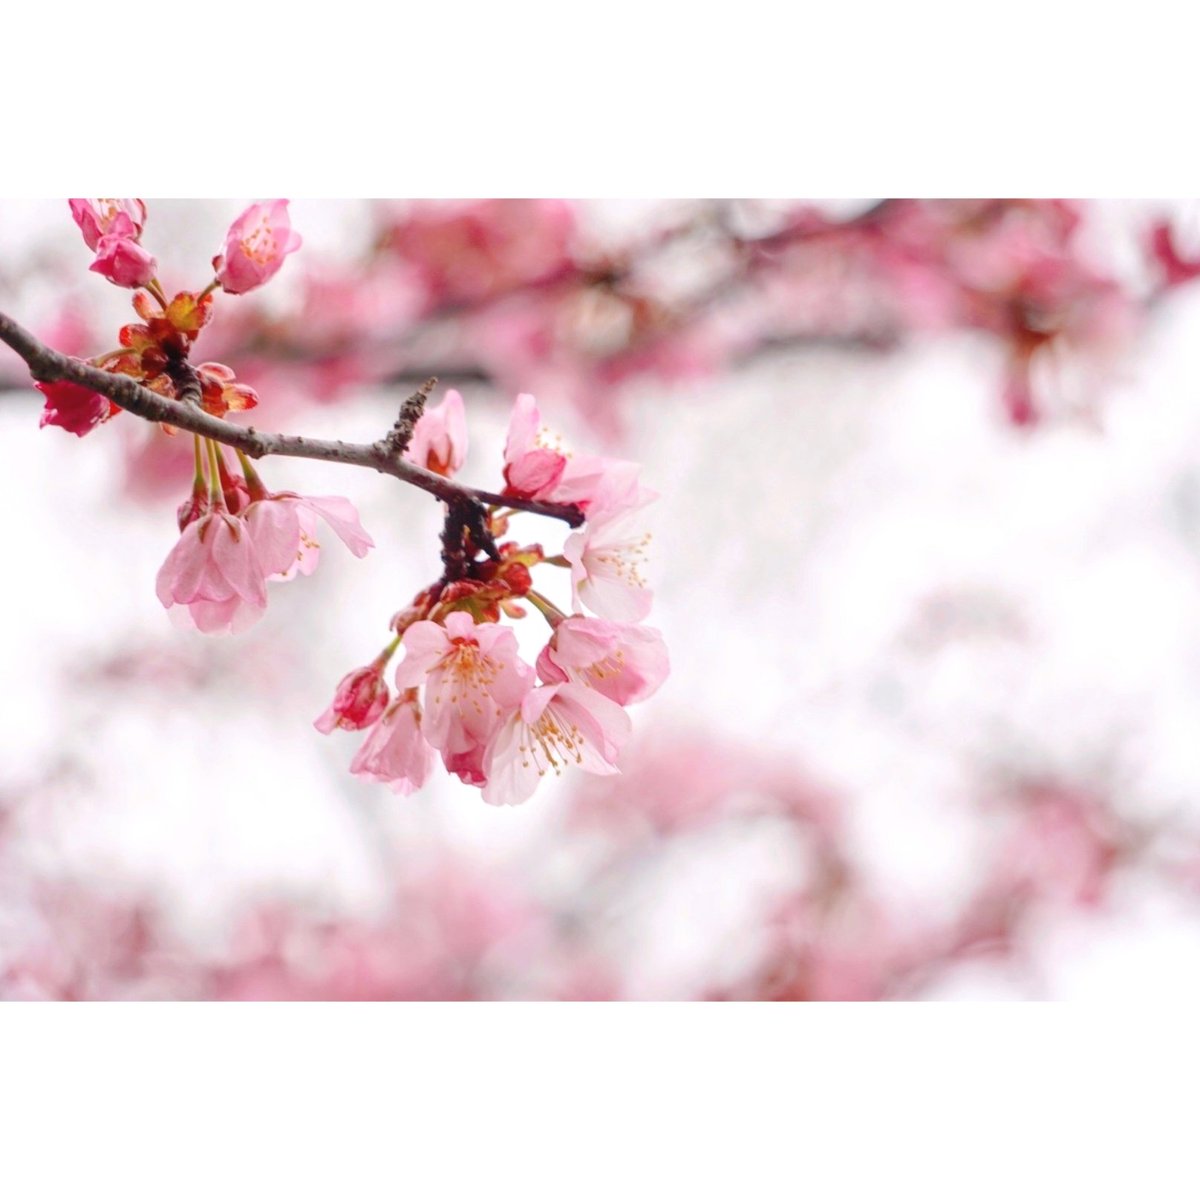 春の囁き、君のまなざし。
#桜　#函館　#カメラ